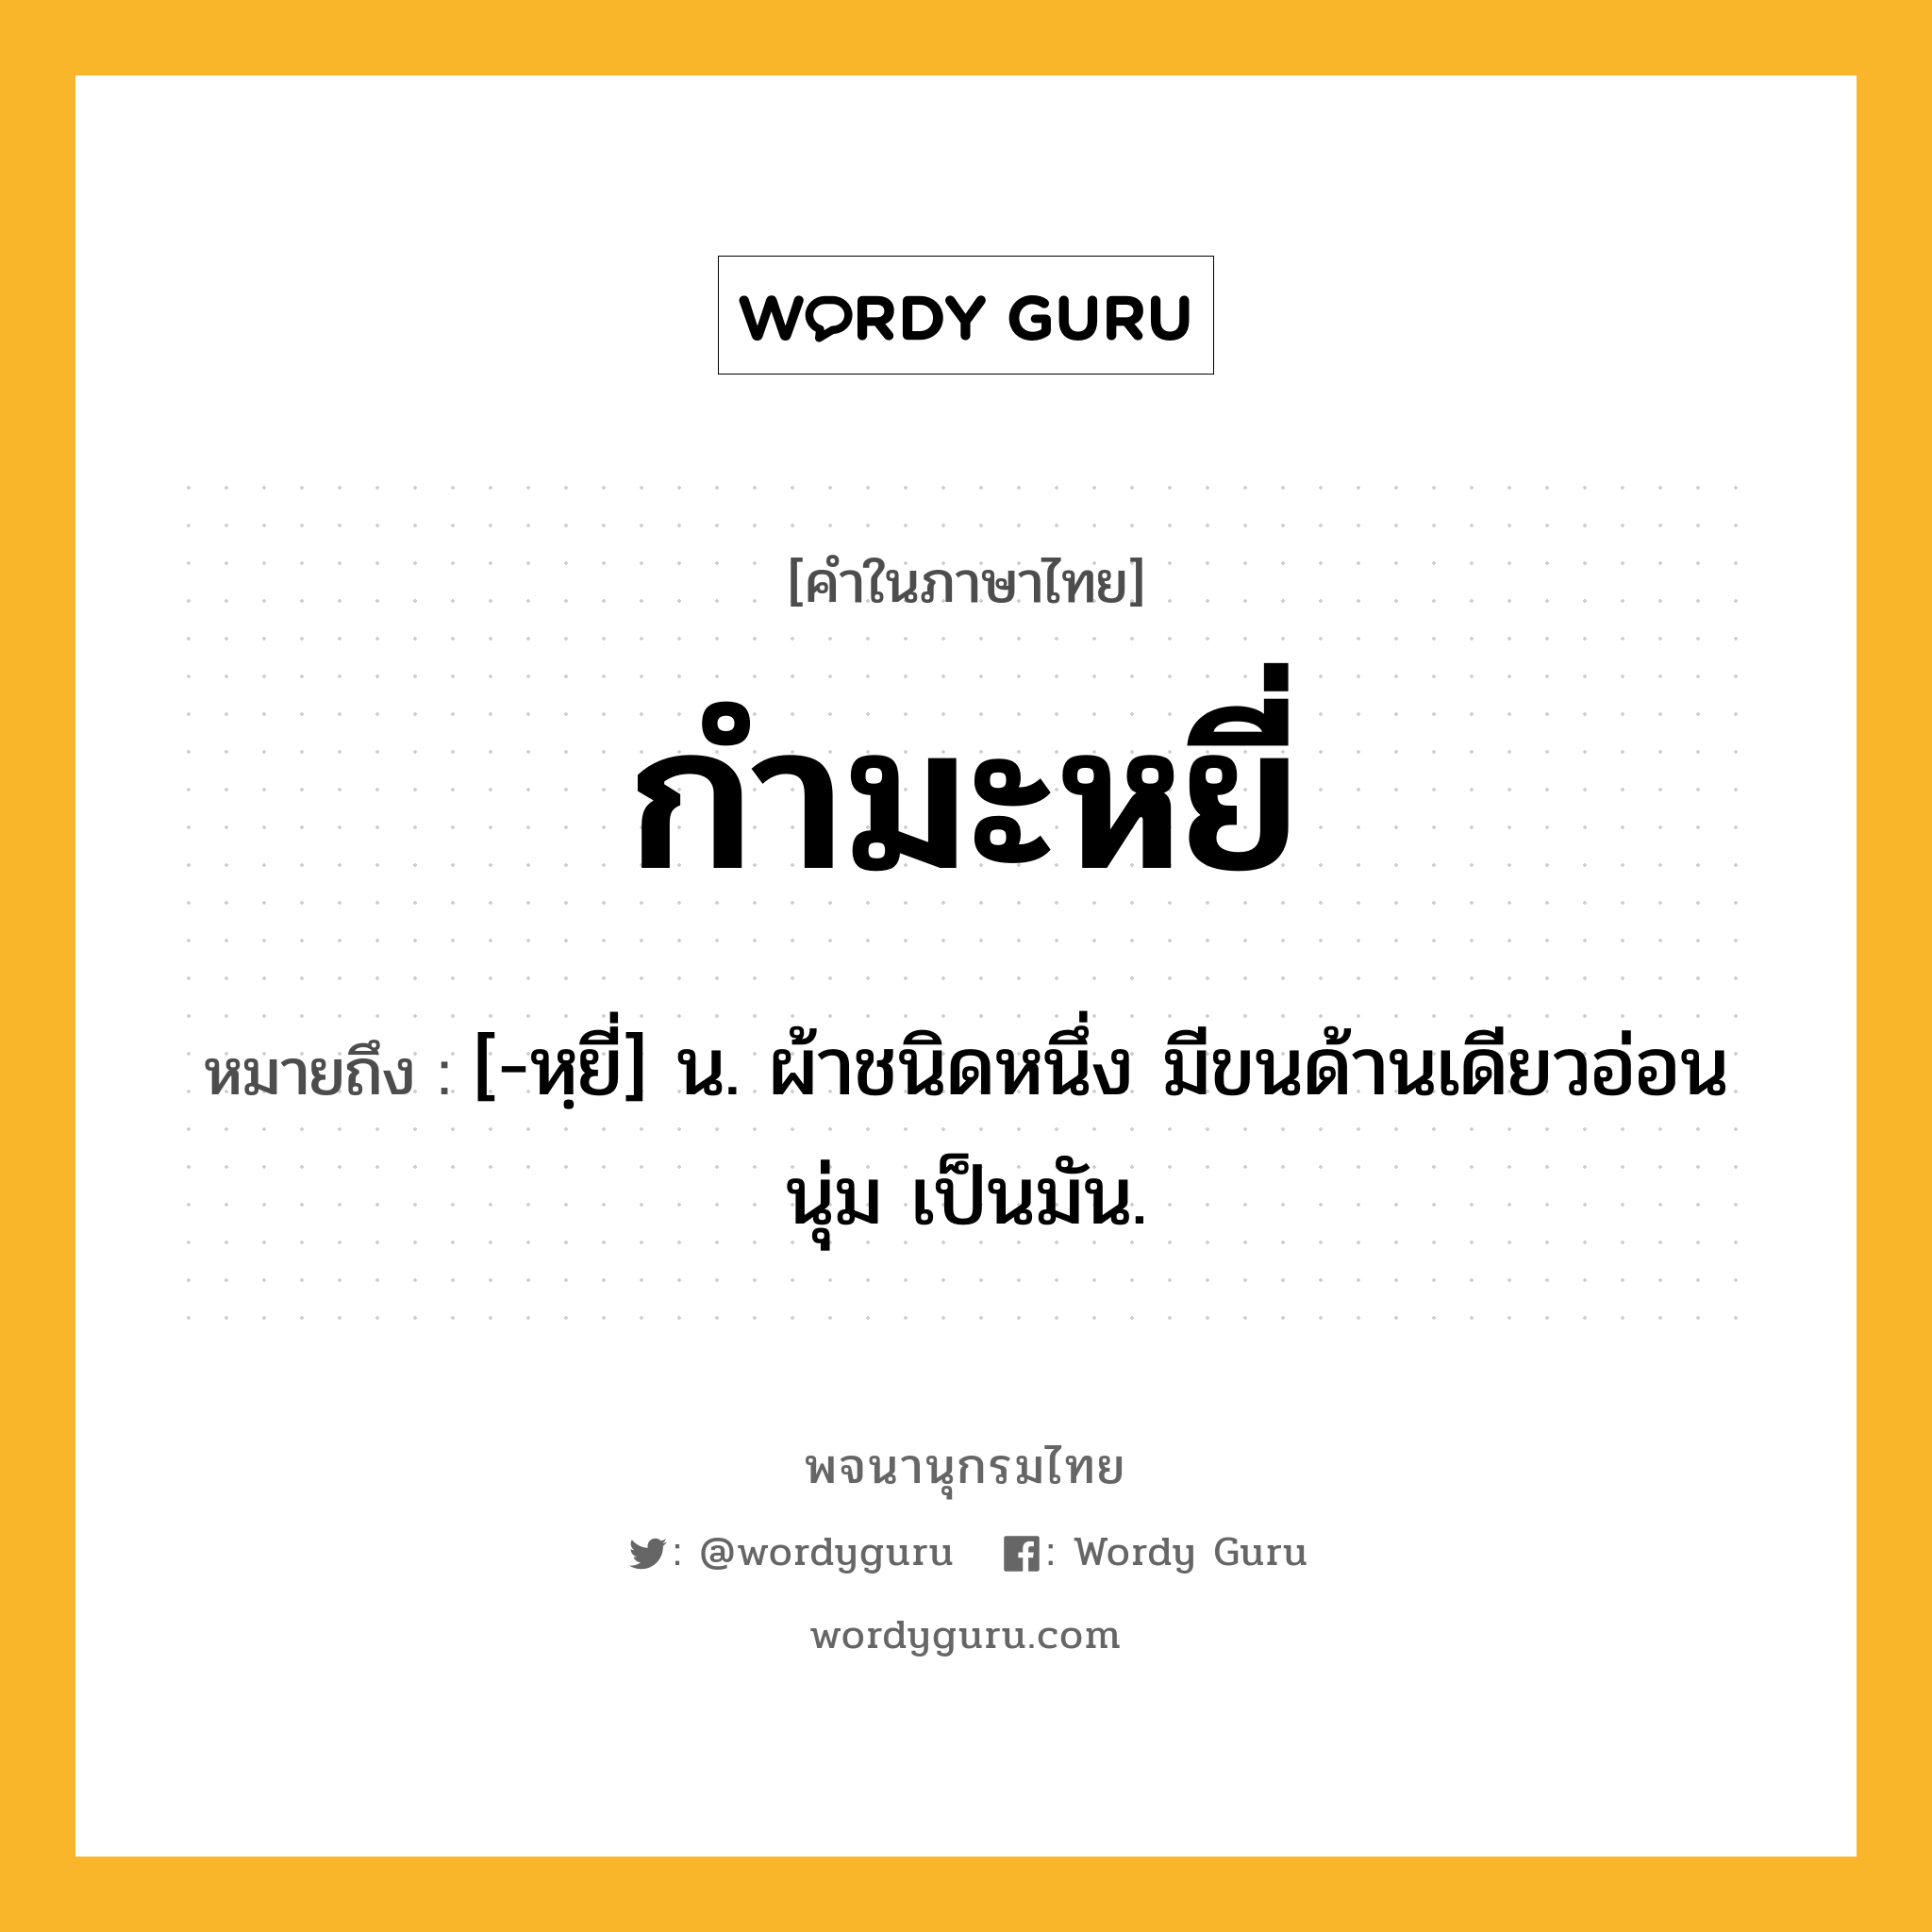 กำมะหยี่ หมายถึงอะไร?, คำในภาษาไทย กำมะหยี่ หมายถึง [-หฺยี่] น. ผ้าชนิดหนึ่ง มีขนด้านเดียวอ่อนนุ่ม เป็นมัน.